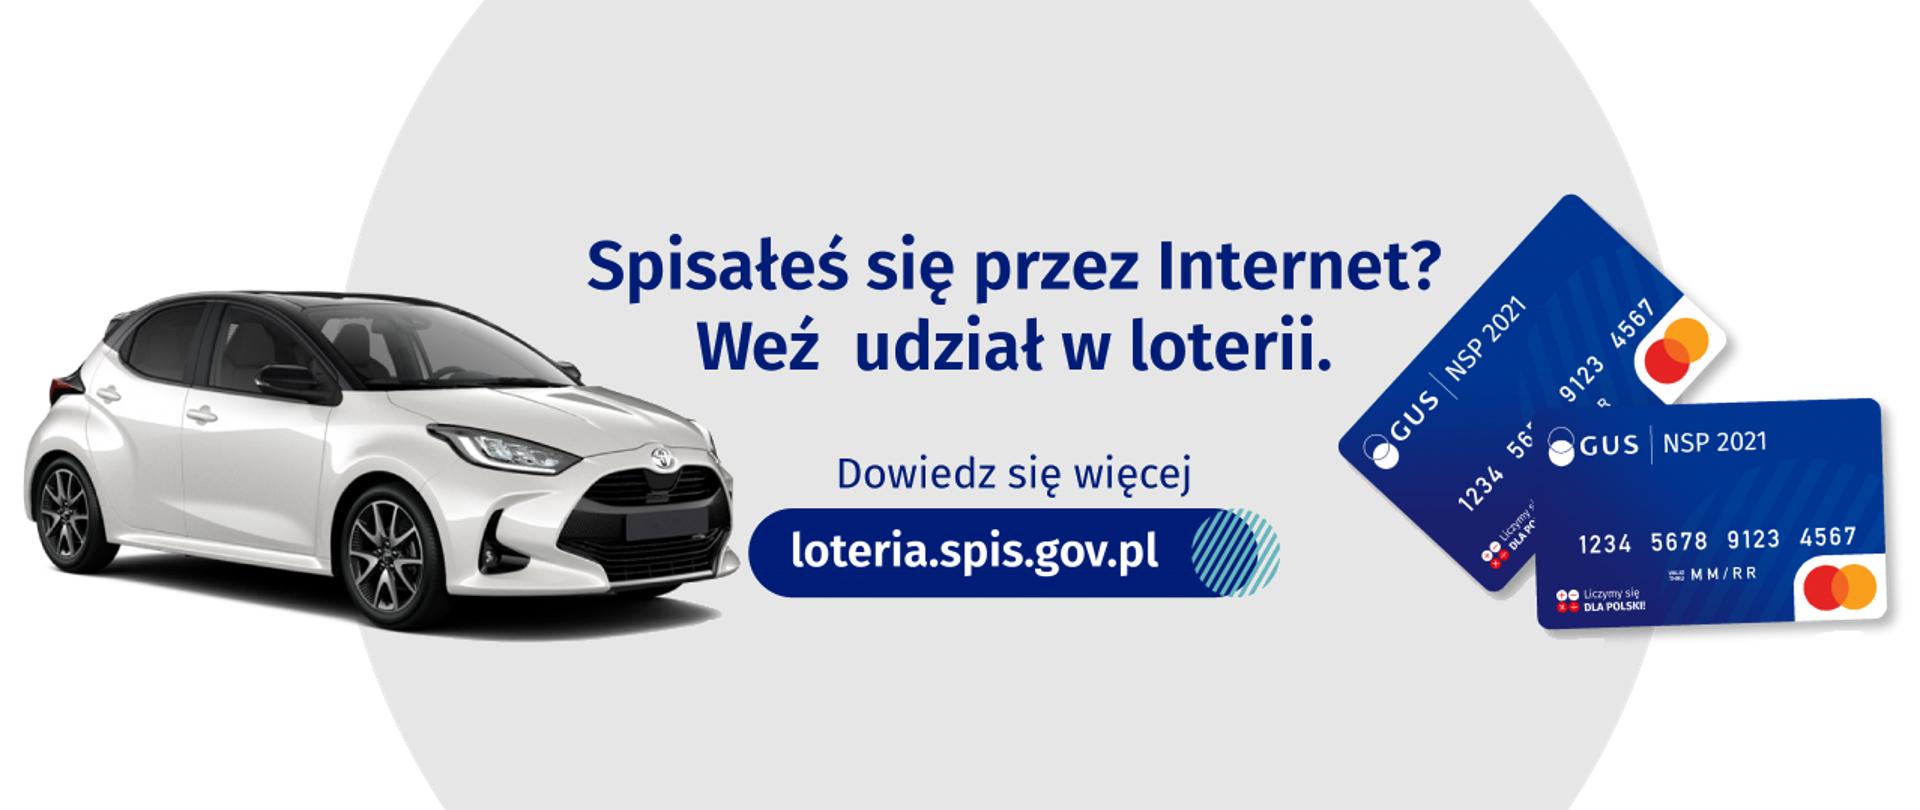 Zdjęcie samochodu i dwóch kart płatniczych, pomiędzy nimi tekst "Spisałeś się przez Internet? Weź udział w loterii. Dowiedz się więcej loteria.spis.gov.pl"